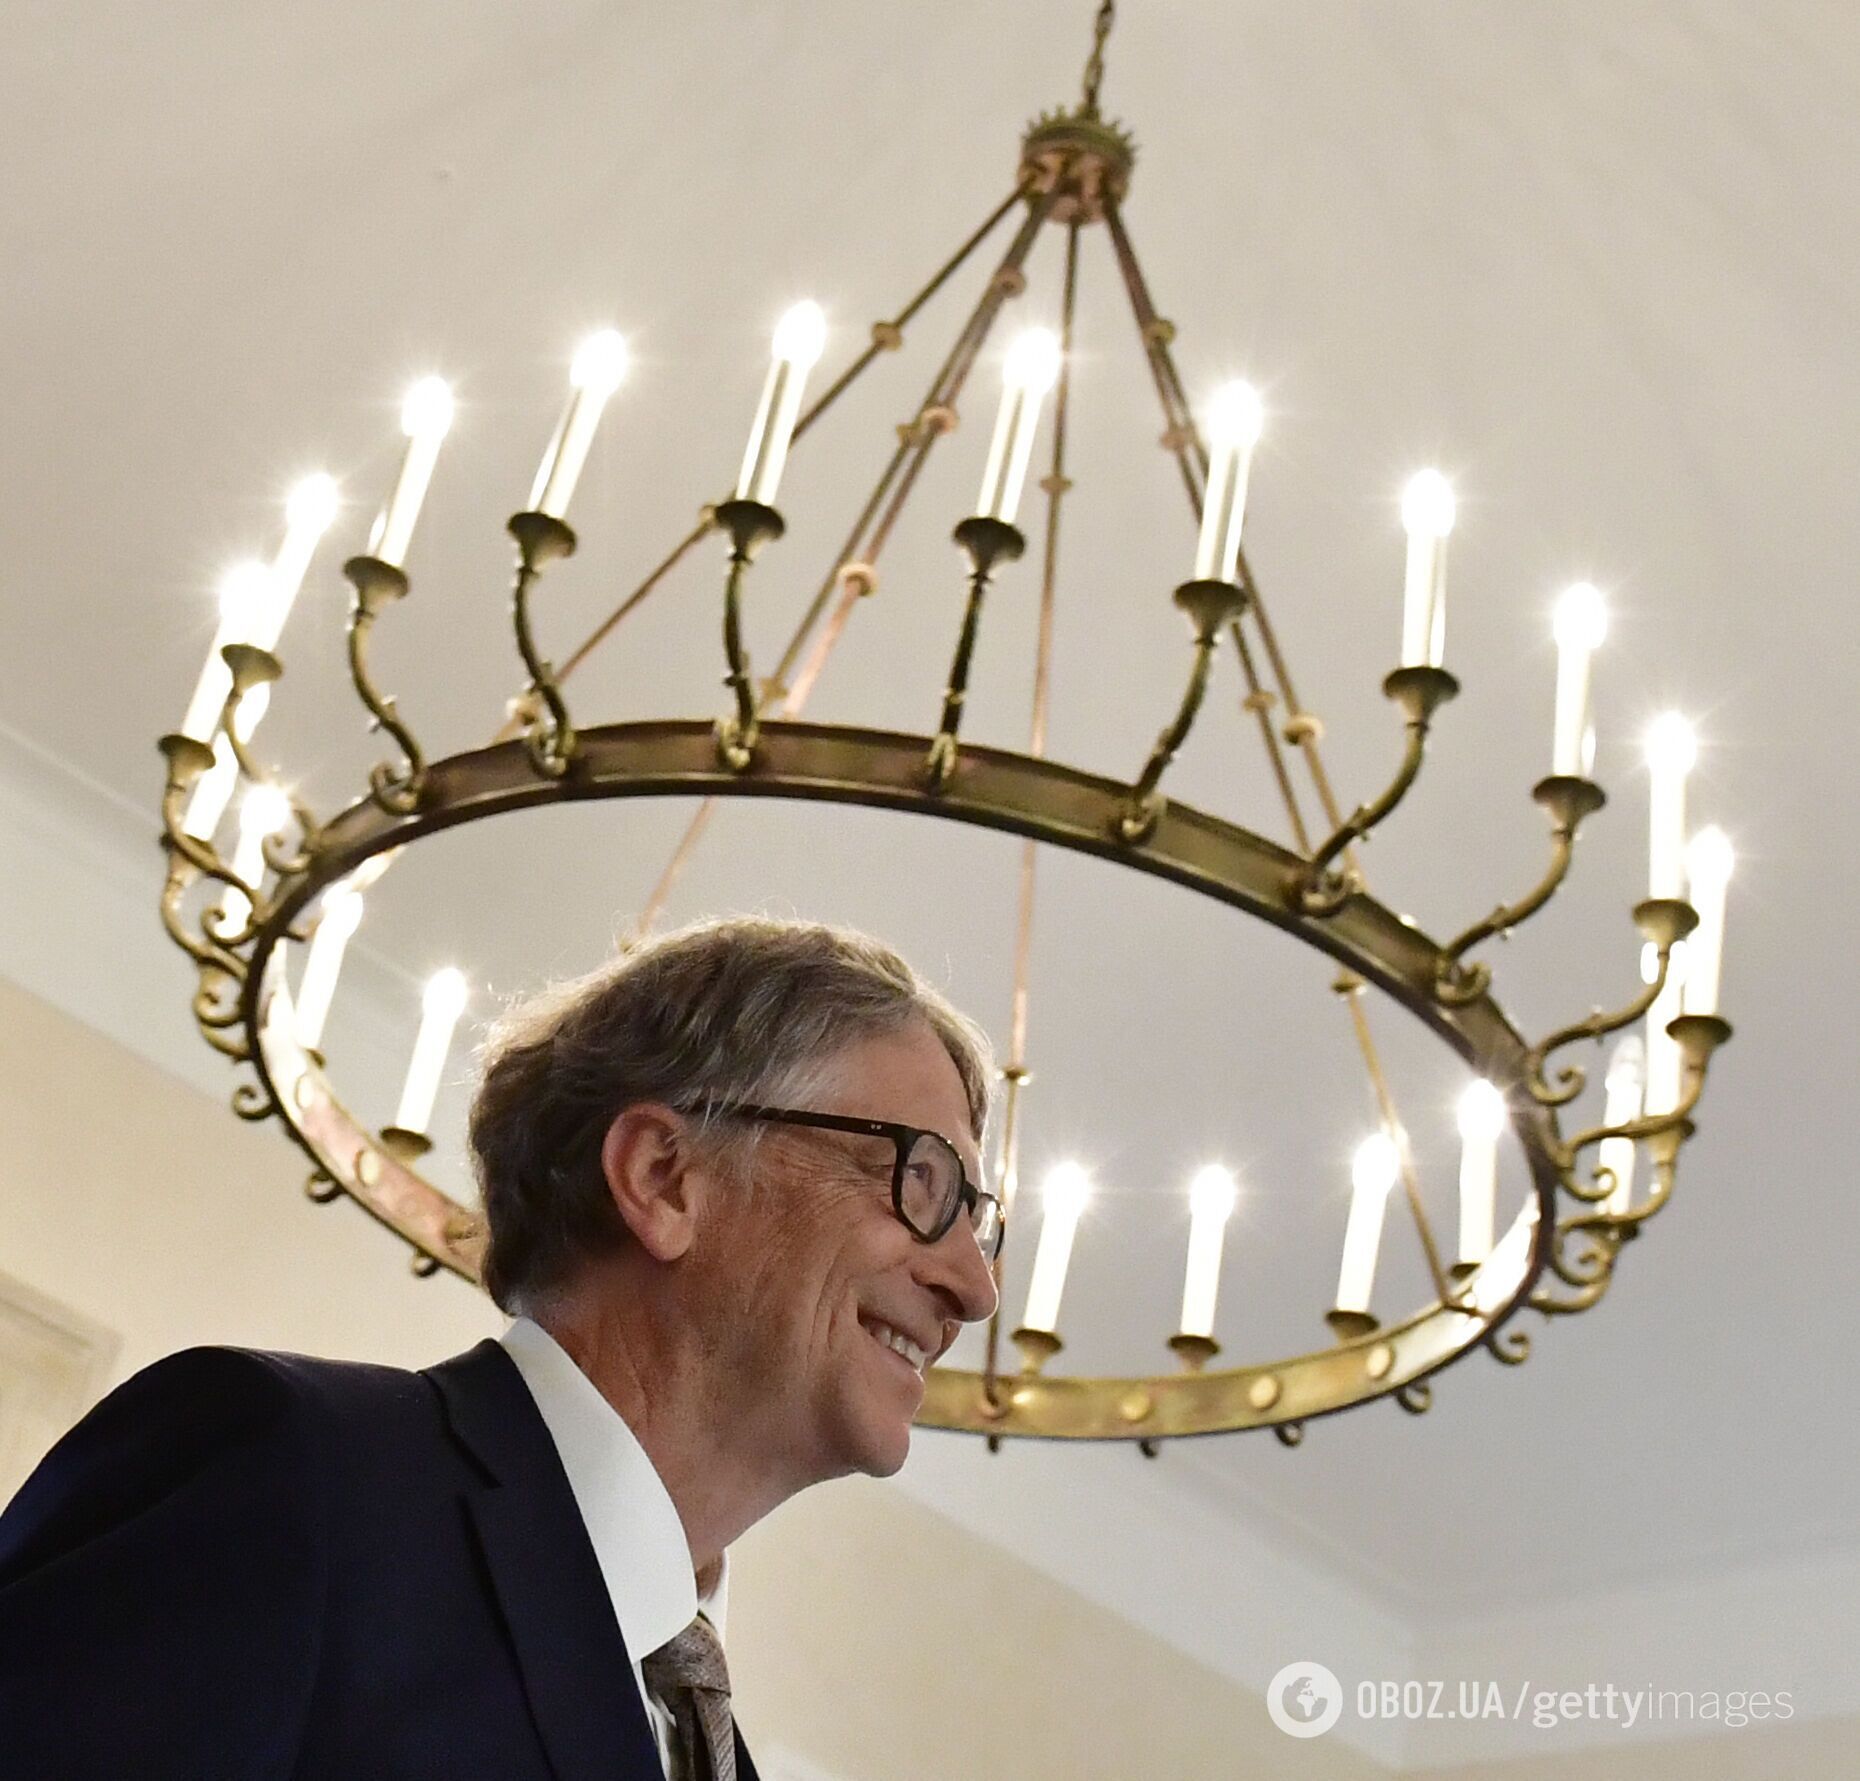 Білл Гейтс - співзасновник Microsoft, який довгі роки був найбагатшою людиною у світі